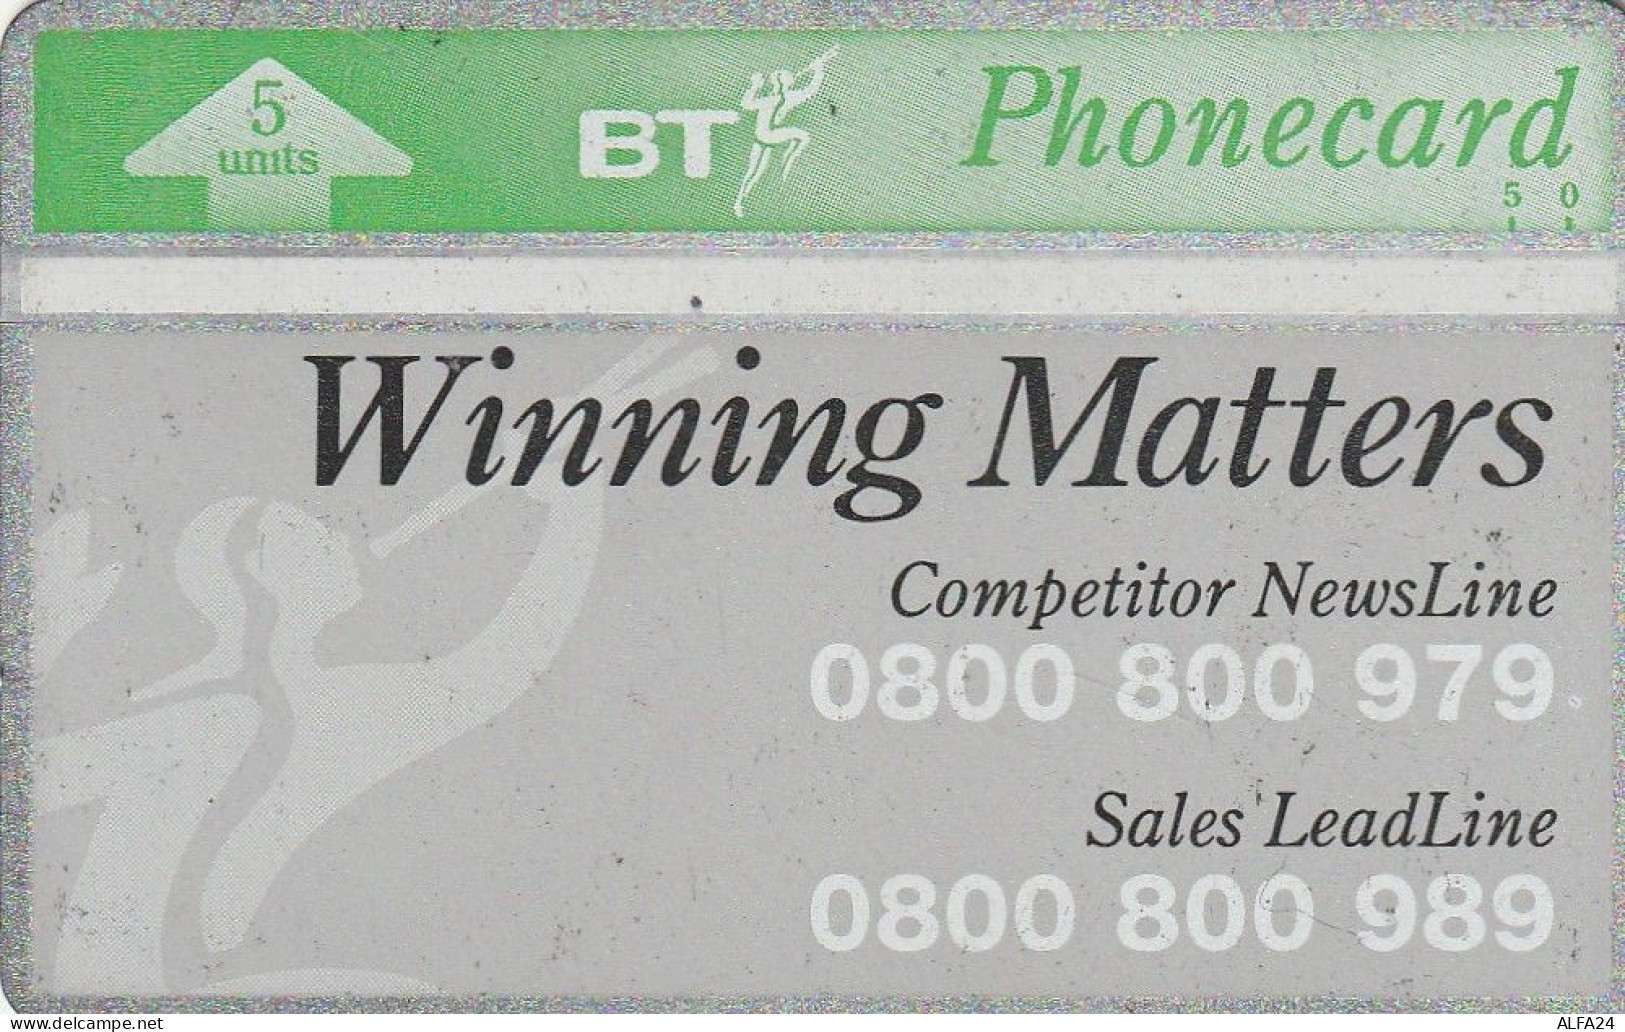 PHONE CARD UK LG (E76.12.6 - BT Private